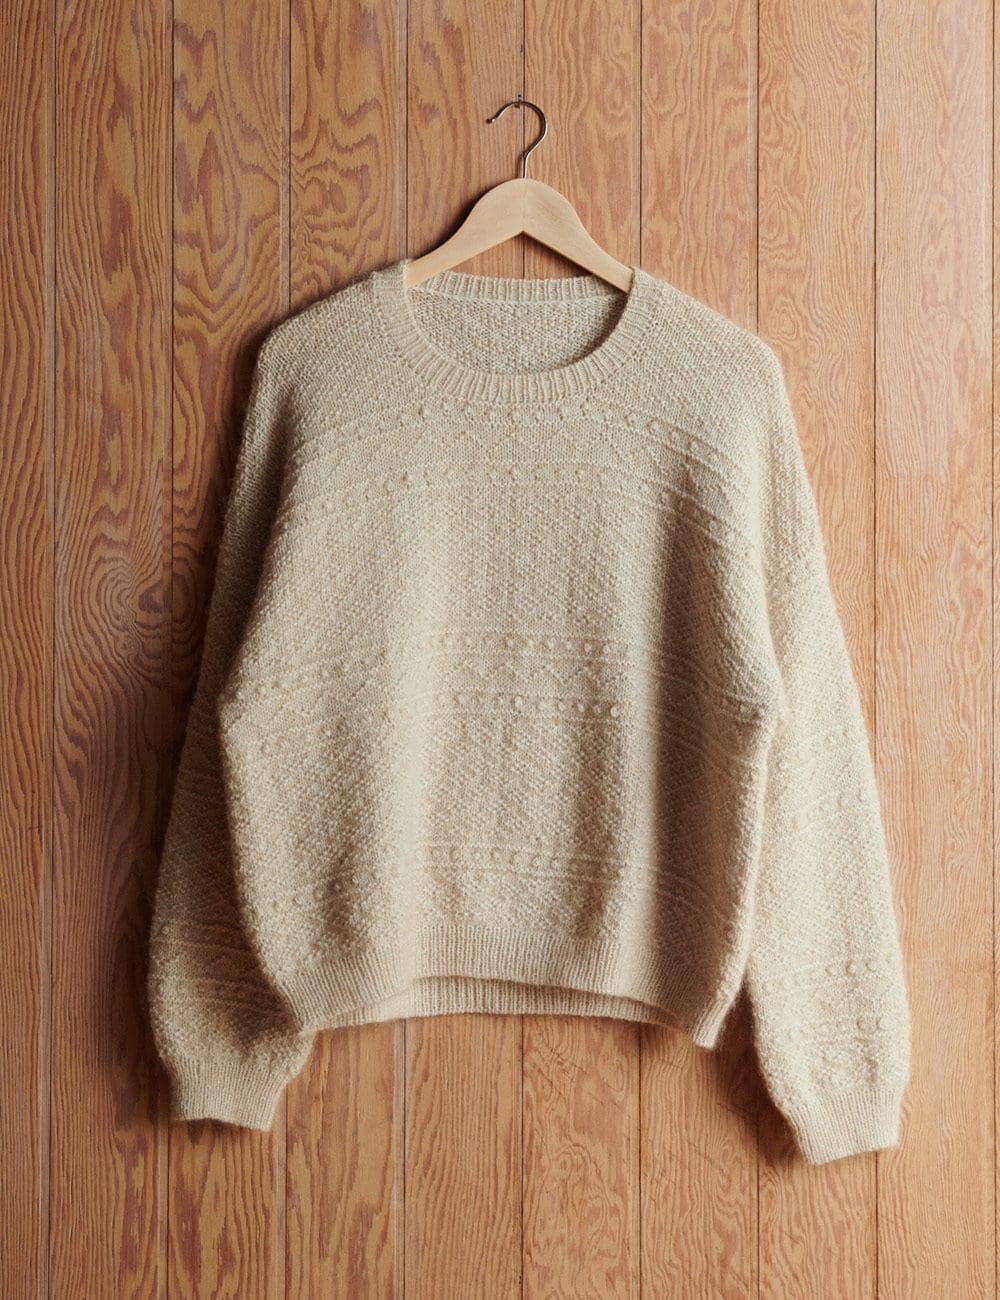 Peggy-sweater-4-le-knit-lene-holme-samsoee-samsøe-strikkeopskrift-p